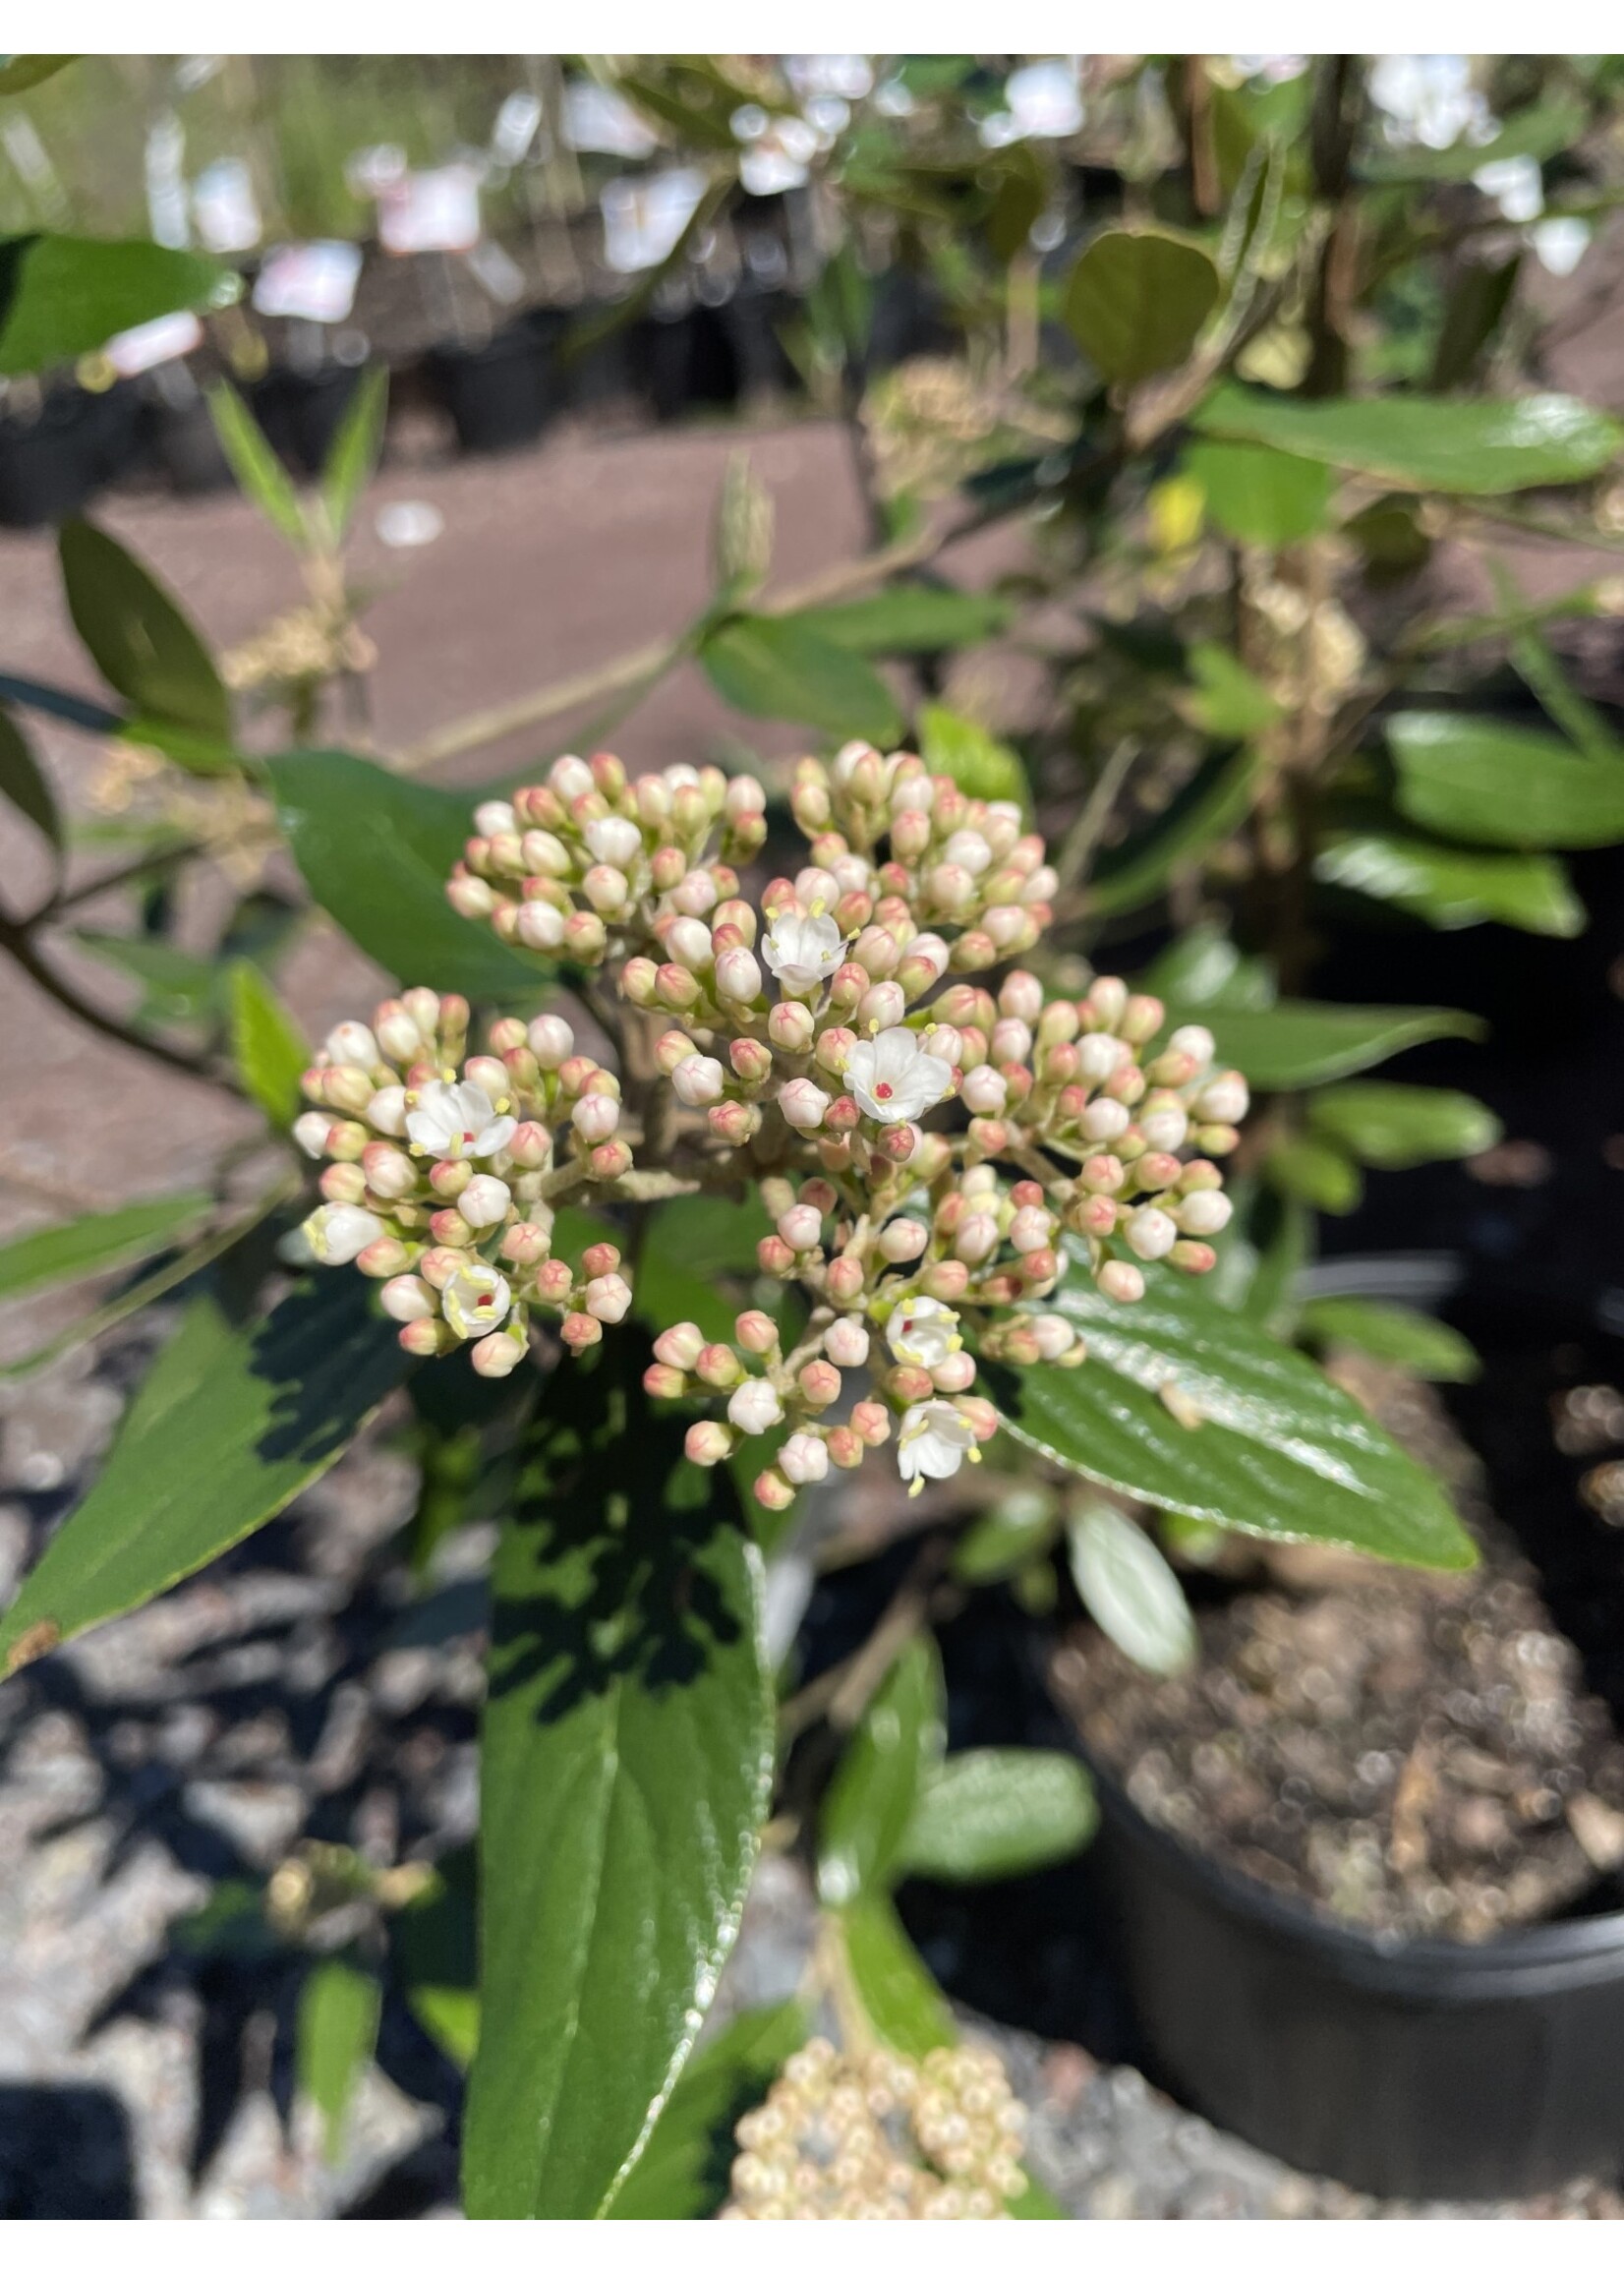 Viburnum pragense Viburnum - Willow-Leaf, #3